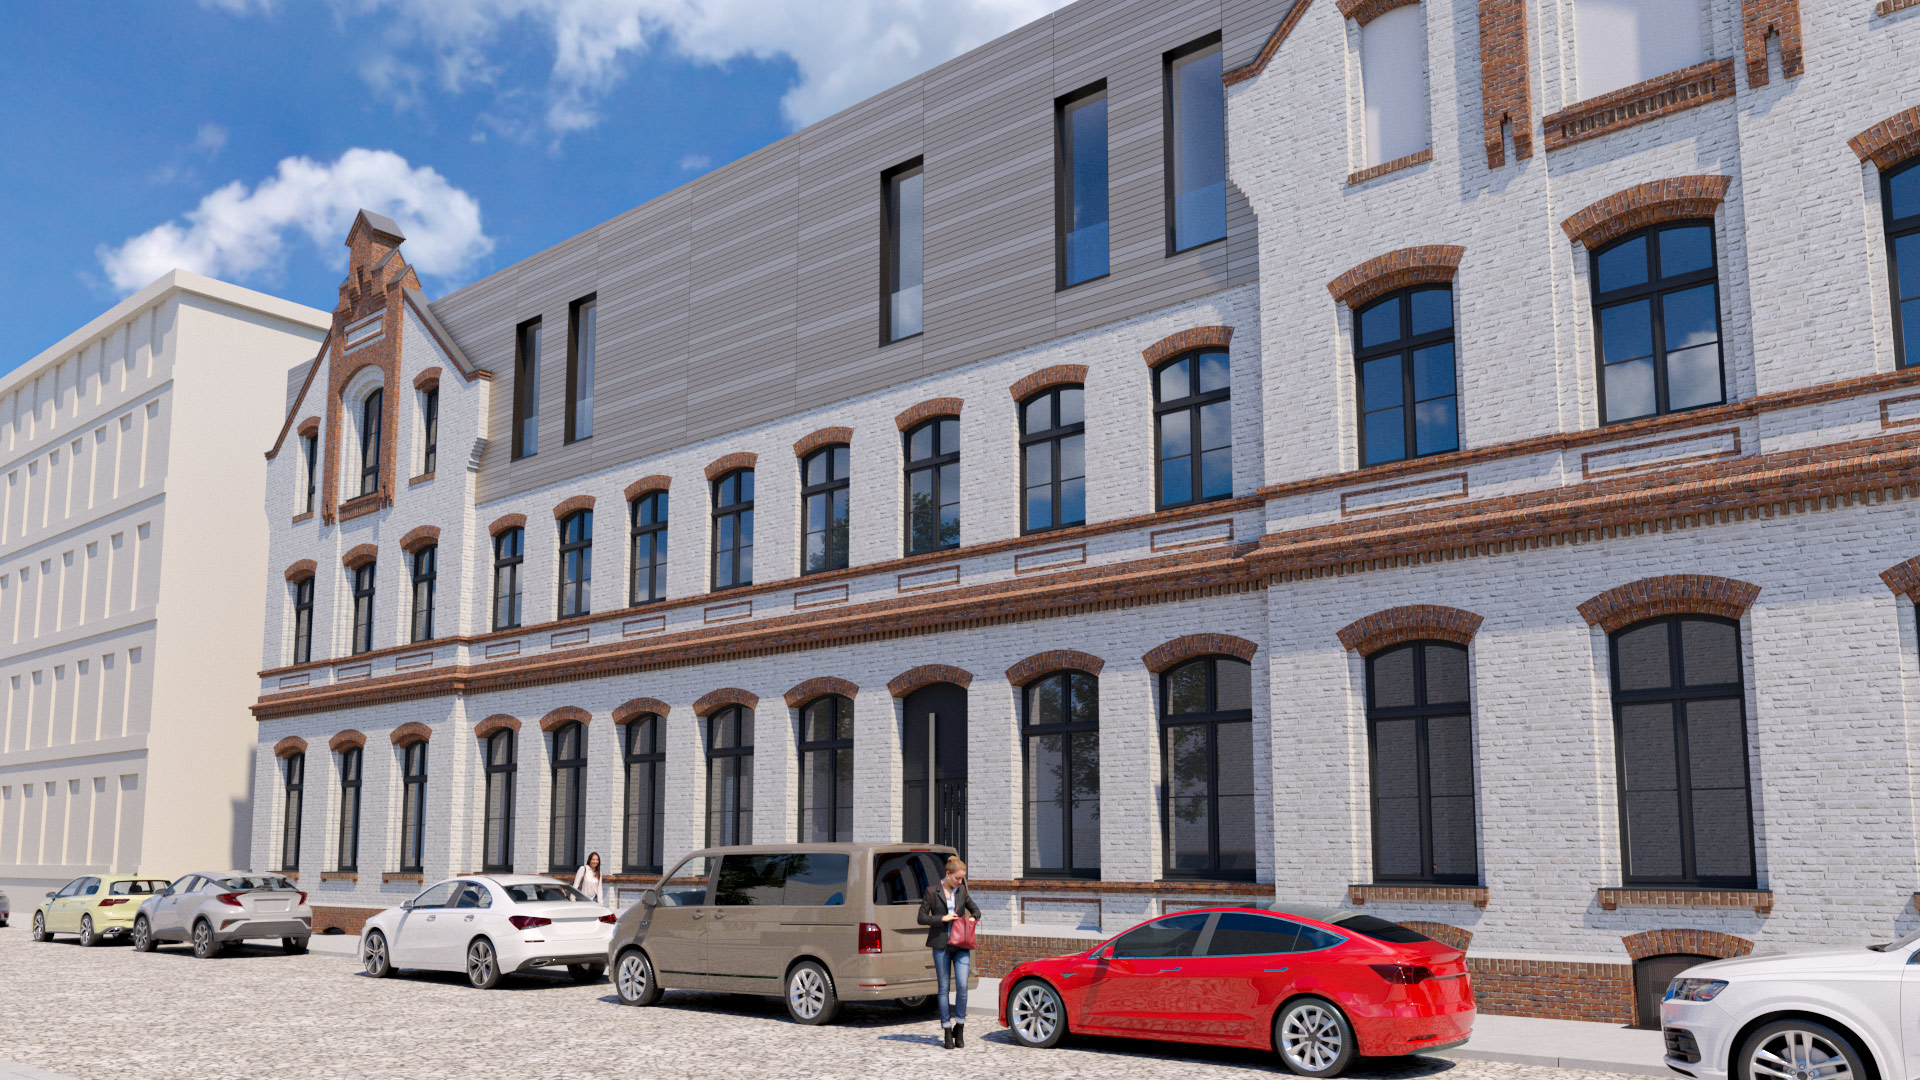 Erweiterung eines historischen Garnisonsgebäudes um ein Penthouse mit großen Fenstern ein Entwurf der Sattler+Täger Architekten GmbH